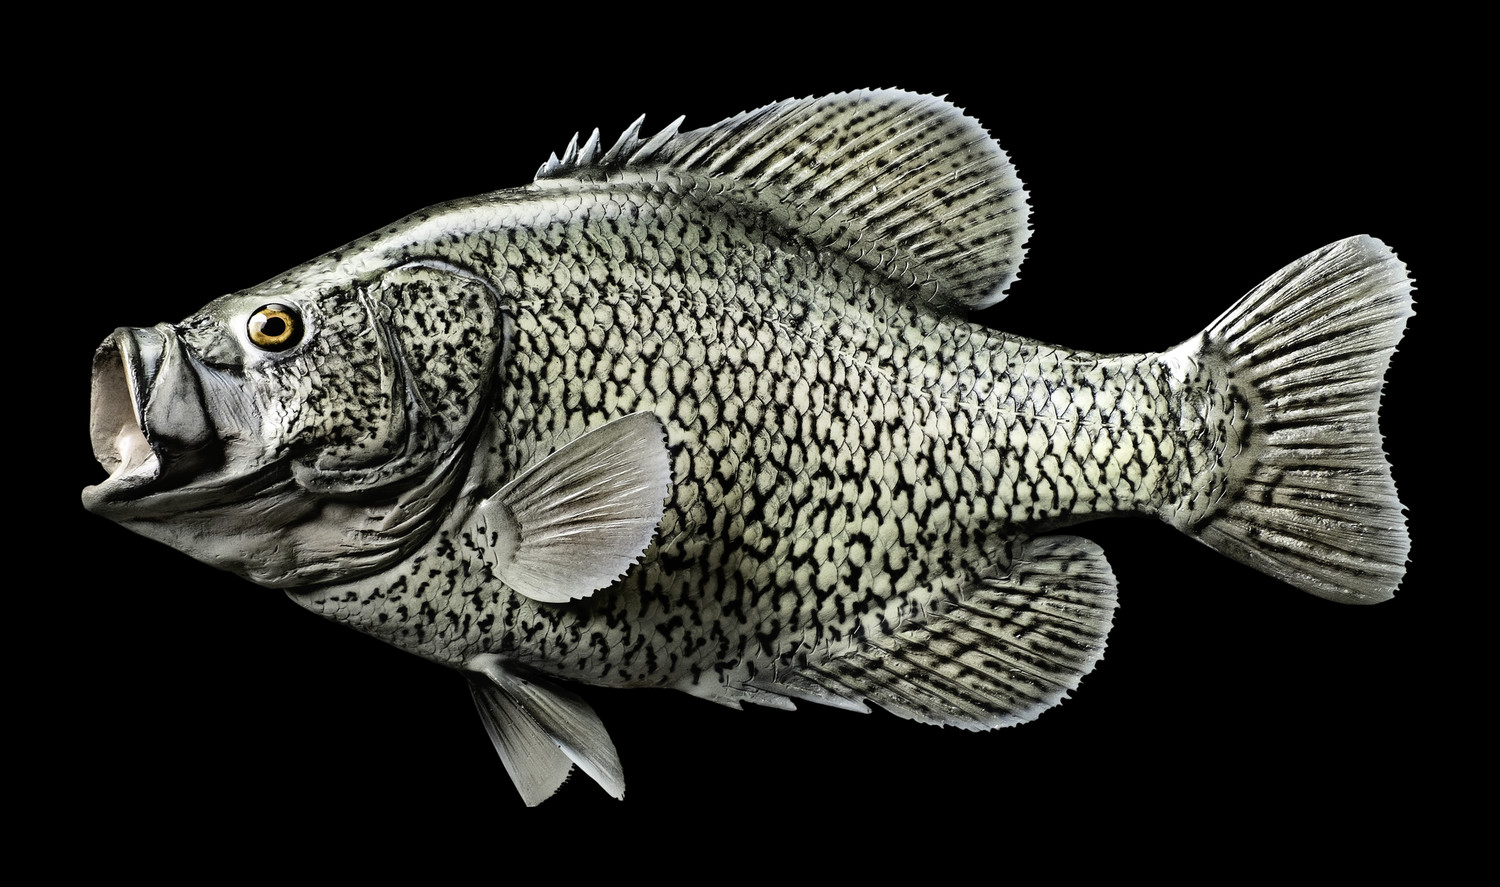 Басс белый – каталог рыб, смотреть онлайн